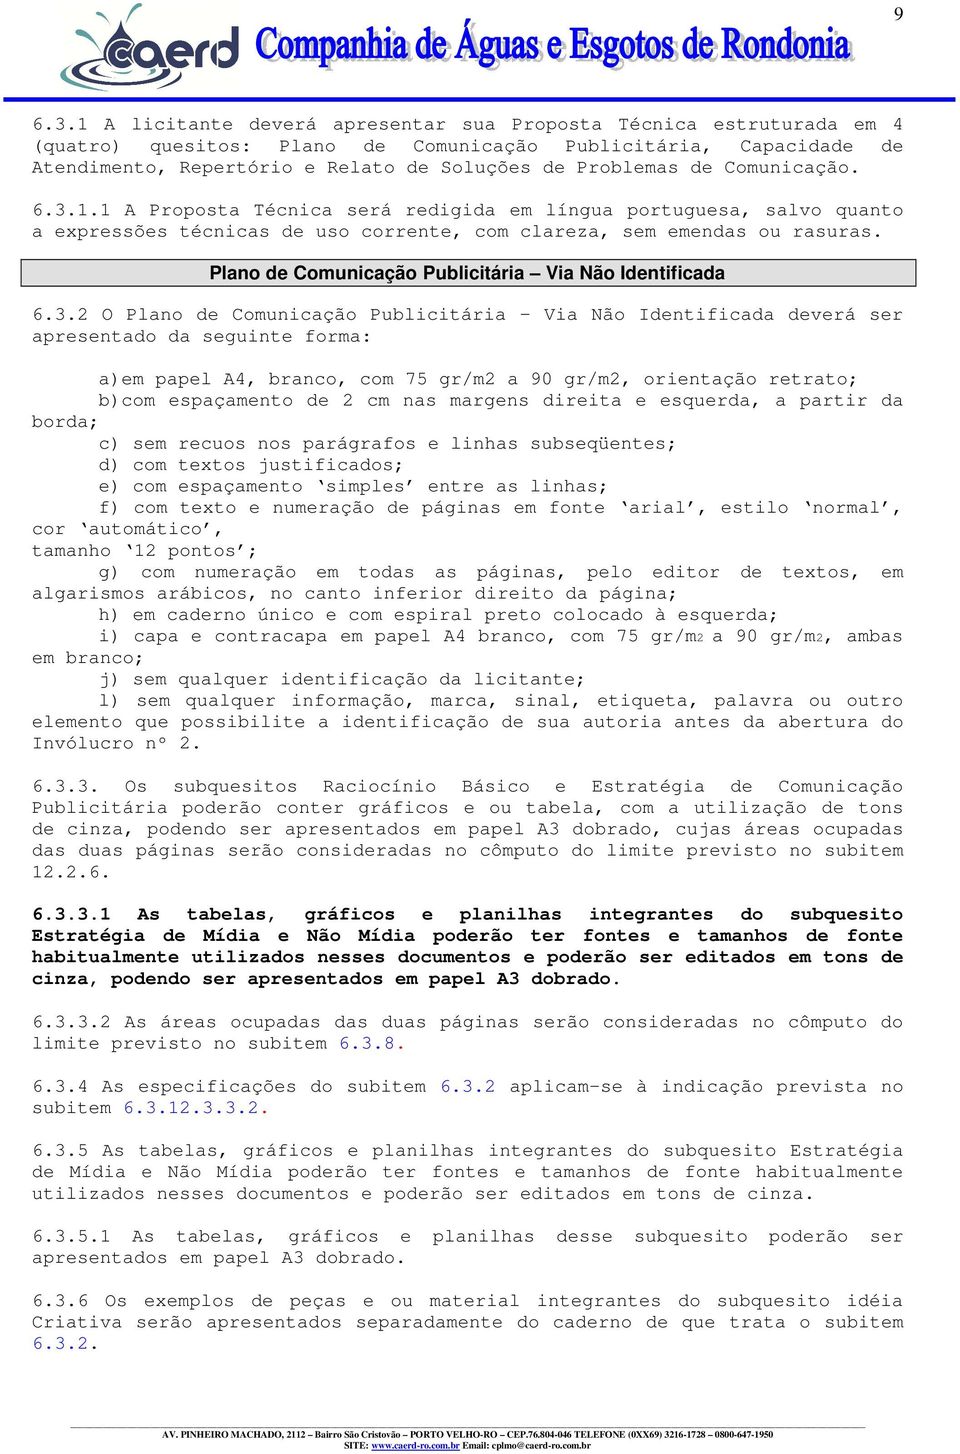 Comunicação. 6.3.1.1 A Proposta Técnica será redigida em língua portuguesa, salvo quanto a expressões técnicas de uso corrente, com clareza, sem emendas ou rasuras.